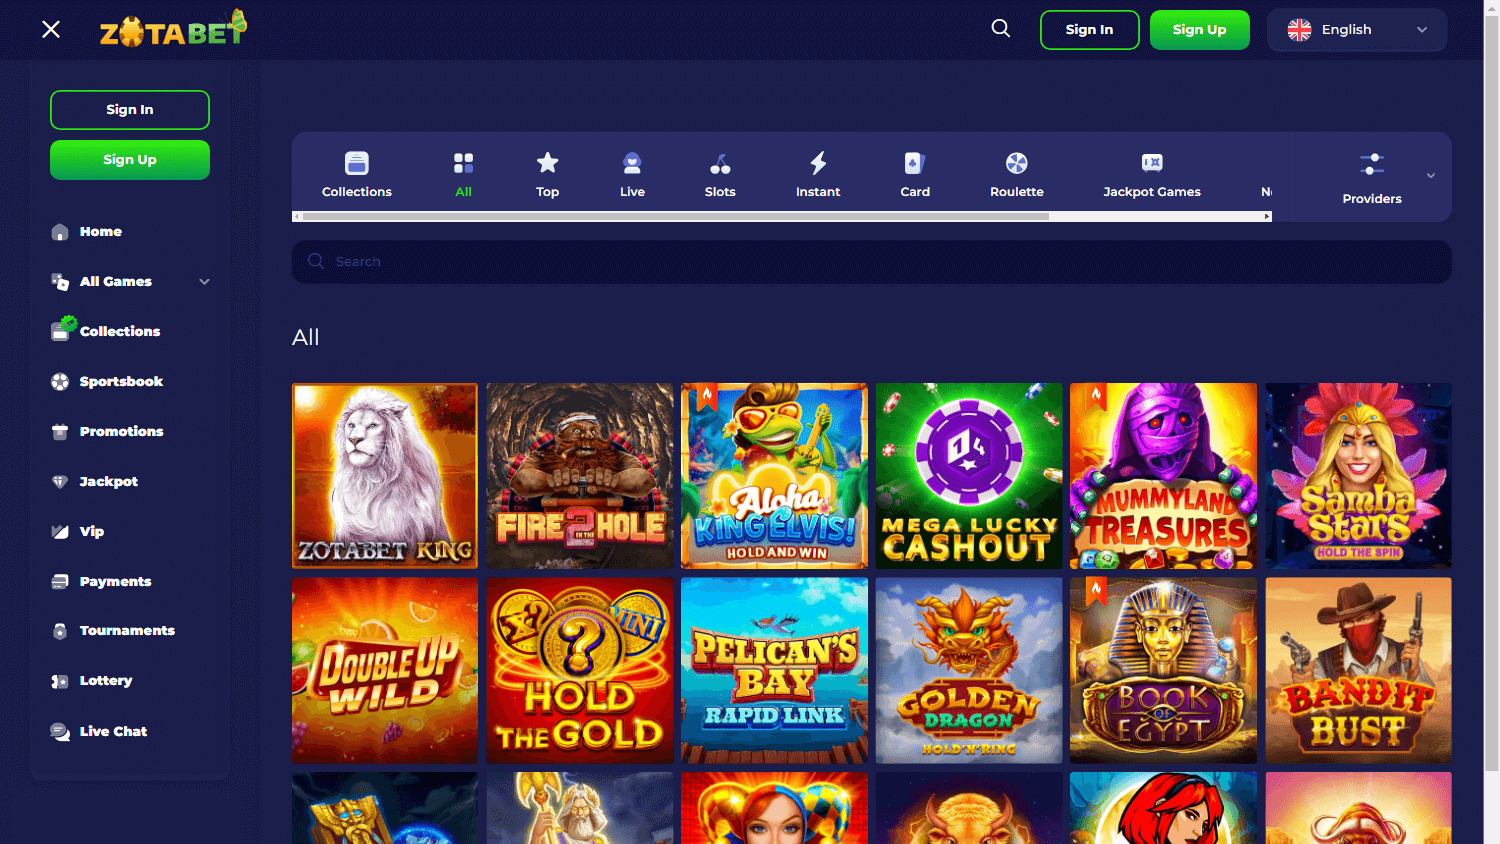 zotabet_casino_game_gallery_desktop